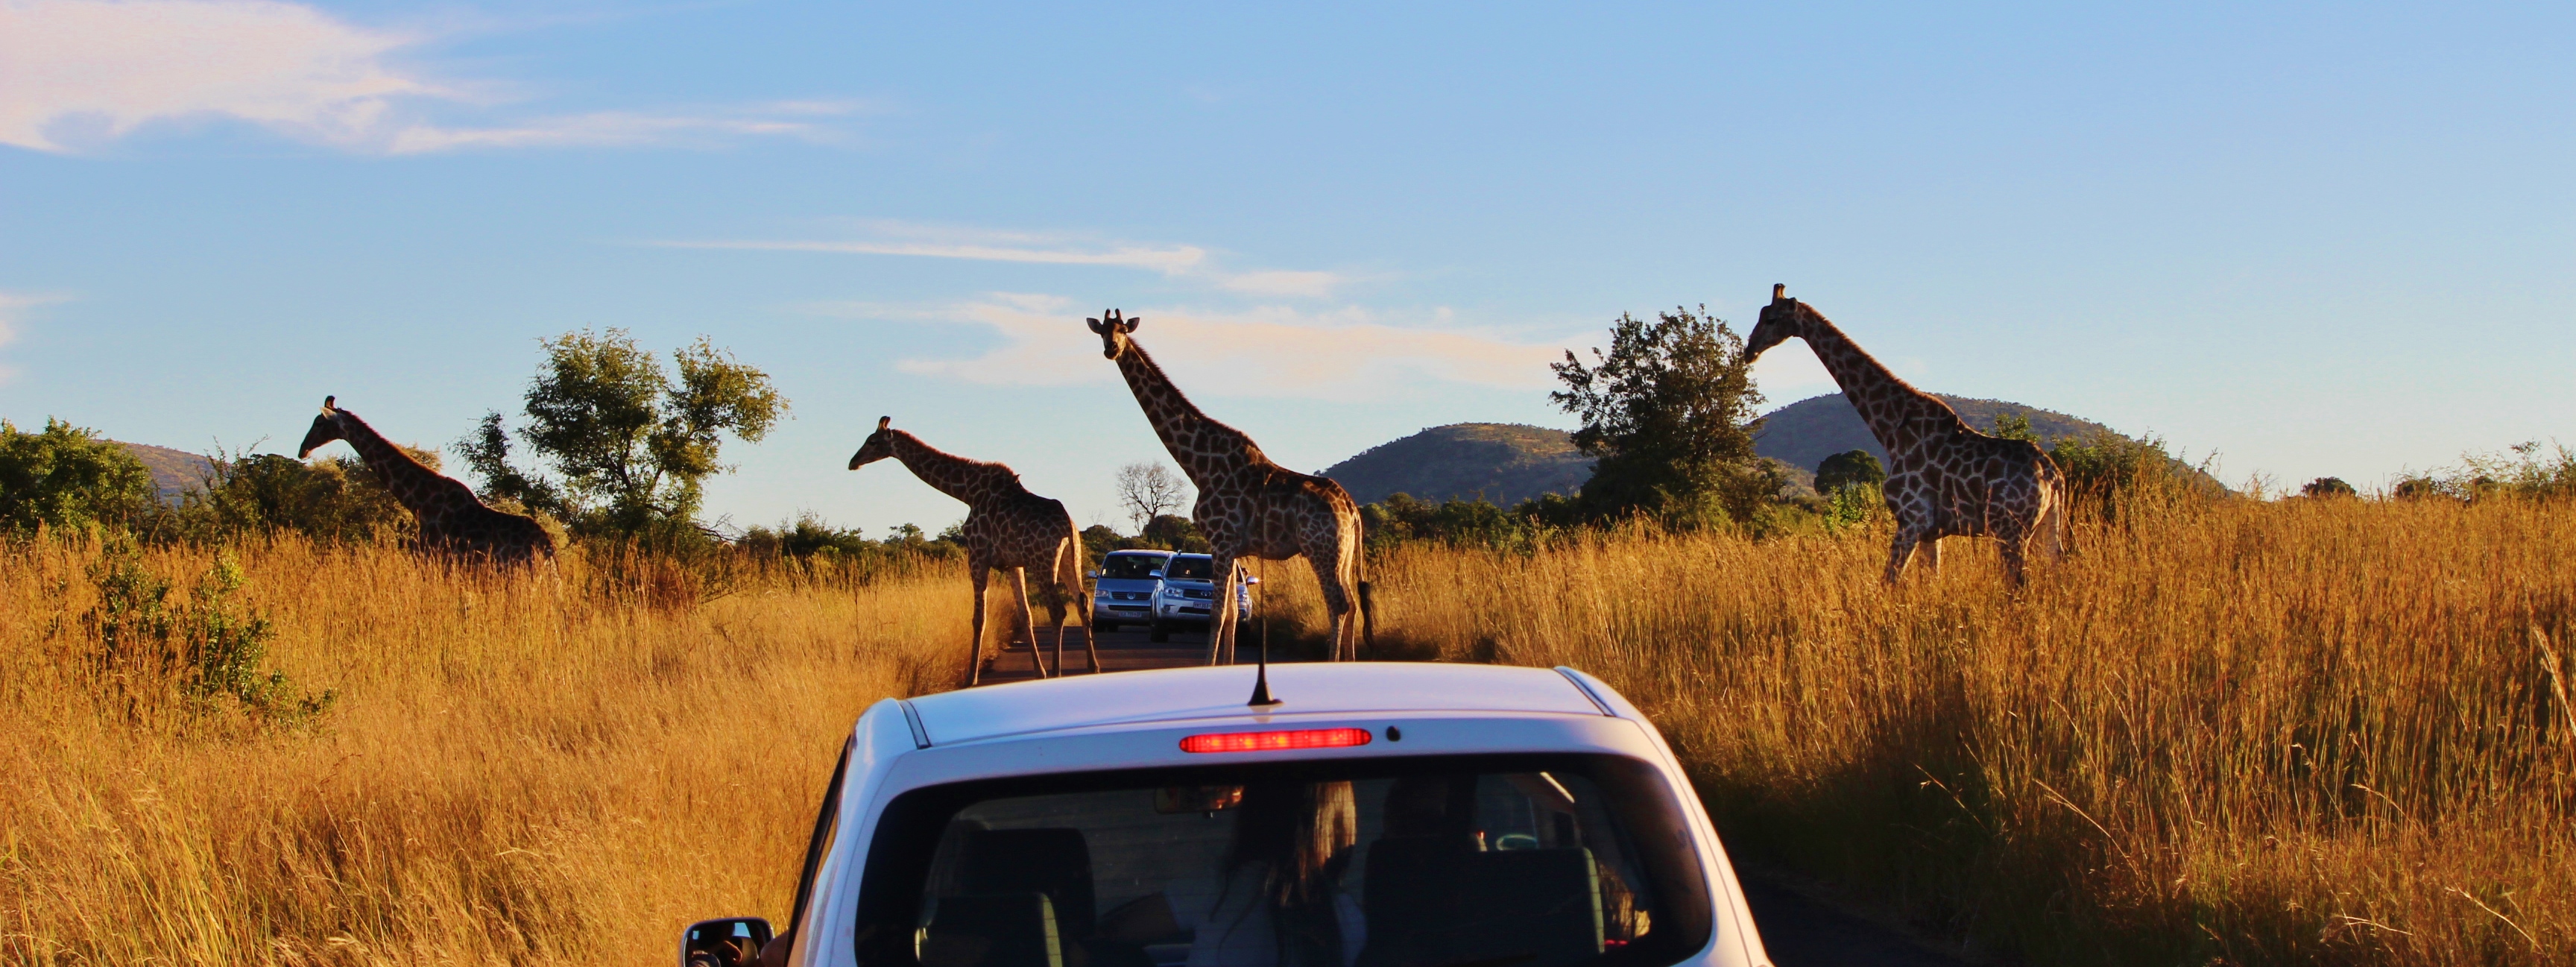 Safari in Pilanesburg